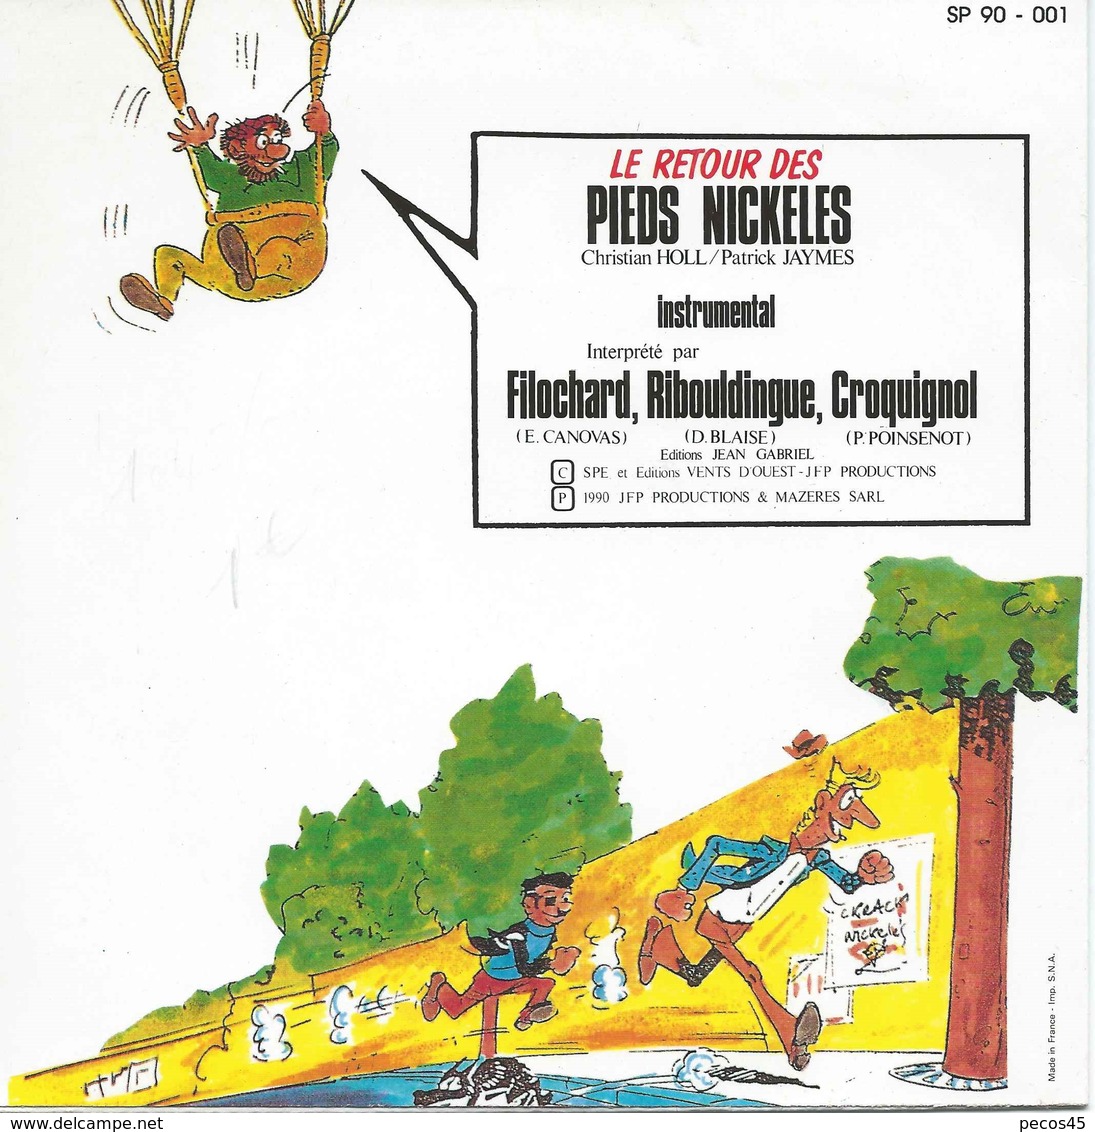 Le Retour Des PIEDS NICKELES - SP 90 - 001 - 1990. - Instrumental